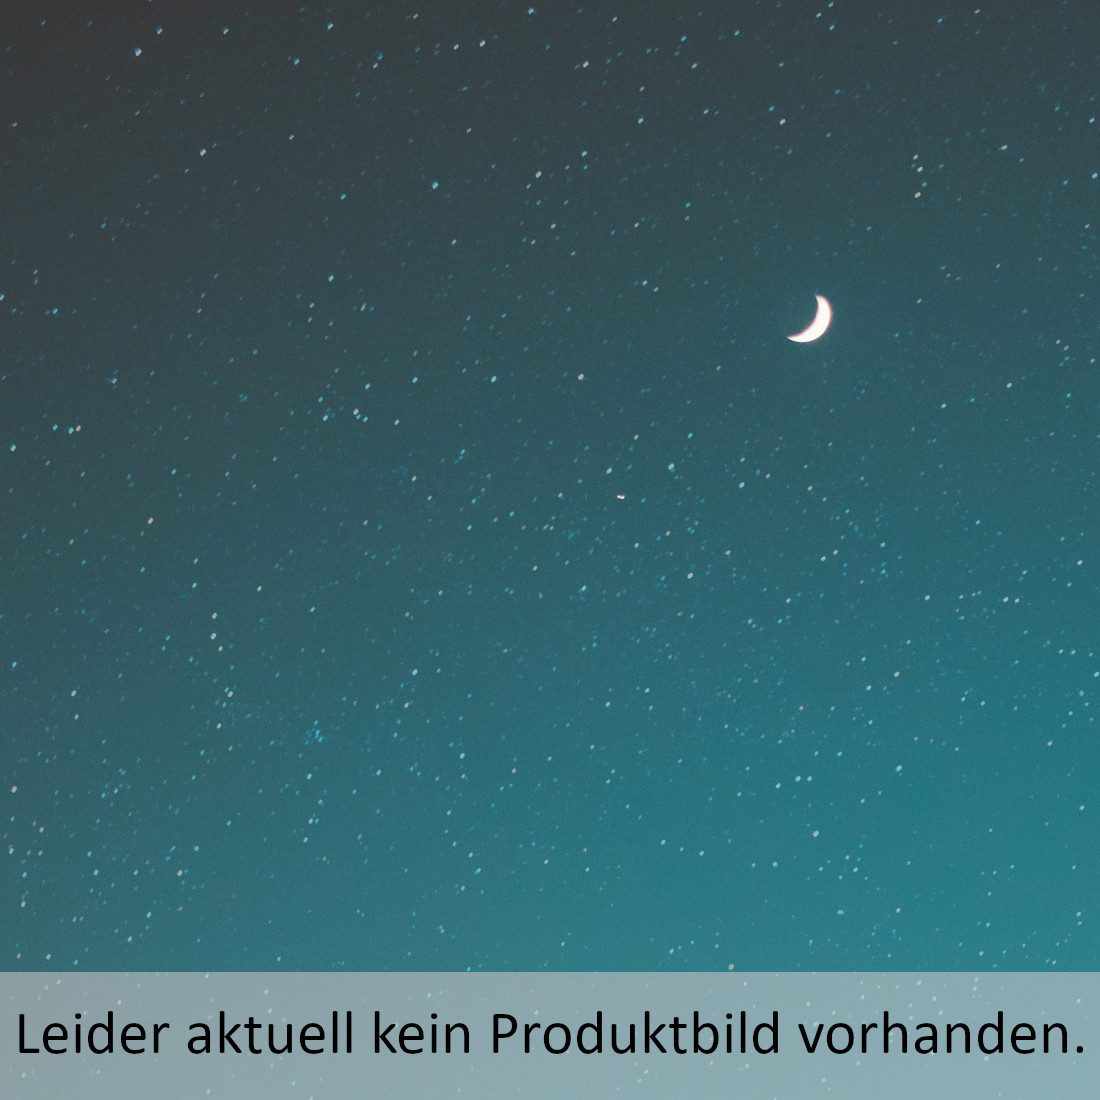 Licht - verborgen im Überfluss Engelsberger, Gerhard 9783945369470